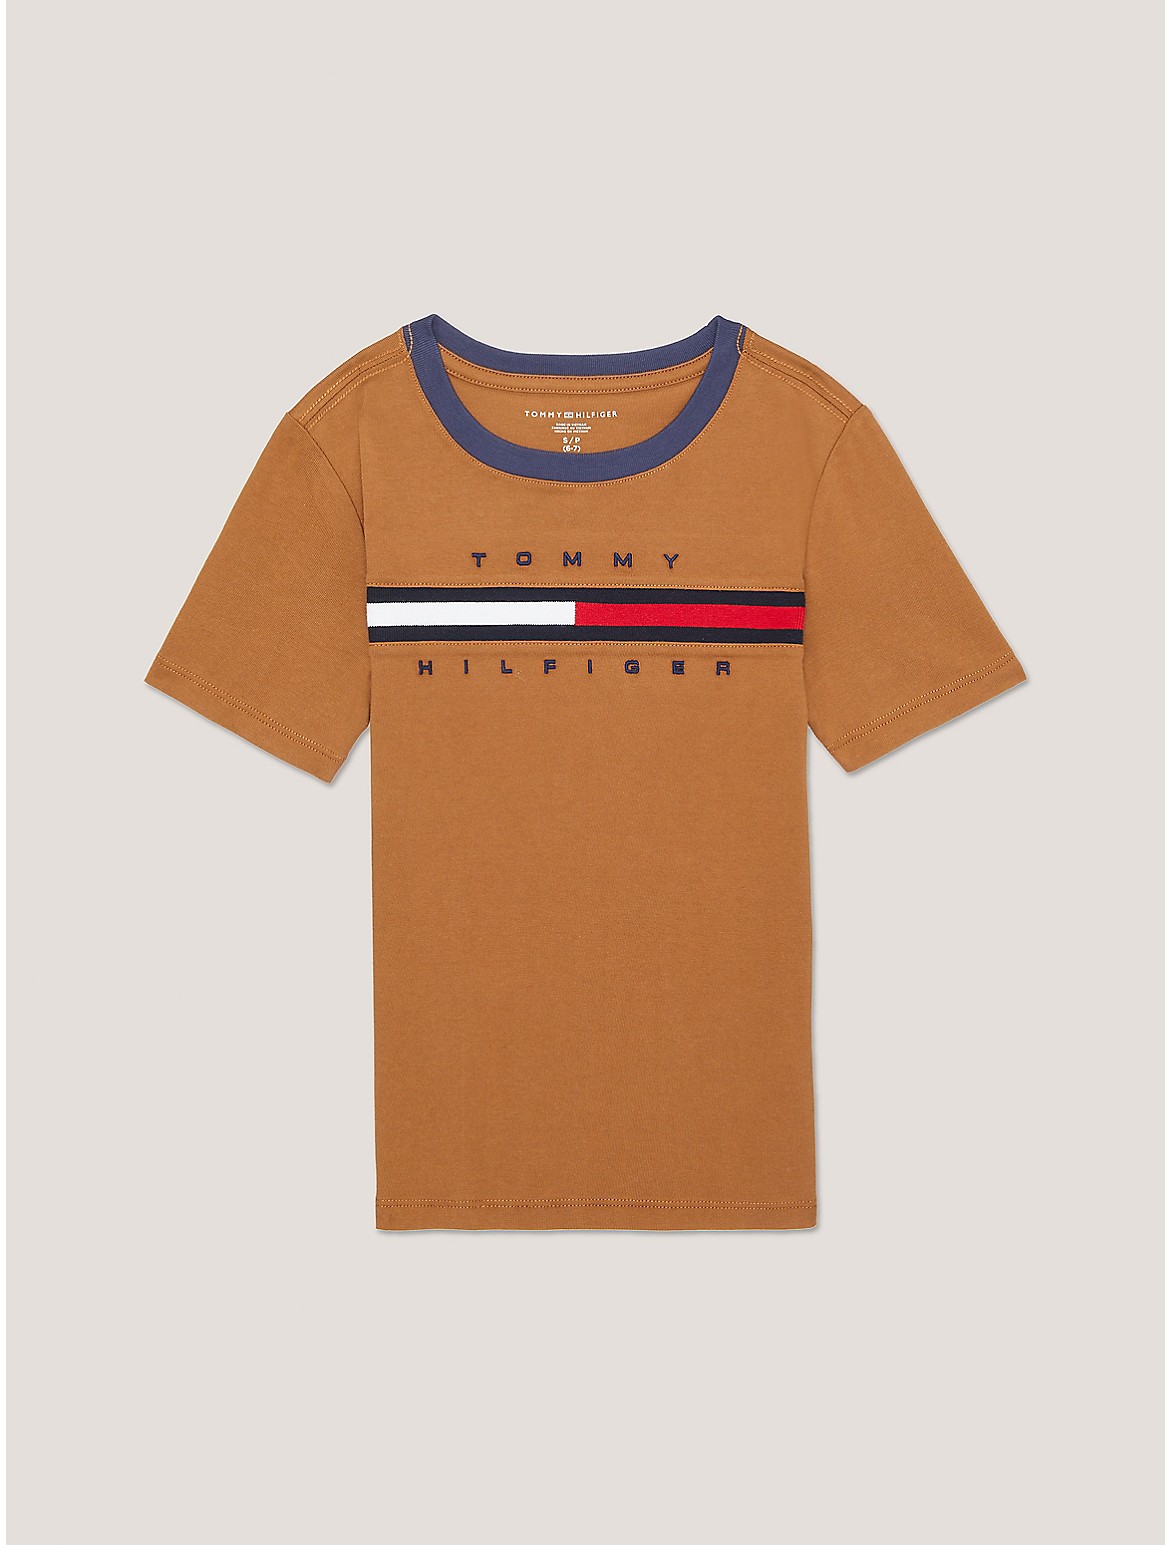 Tommy Hilfiger Kids' Flag Stripe Logo T-Shirt